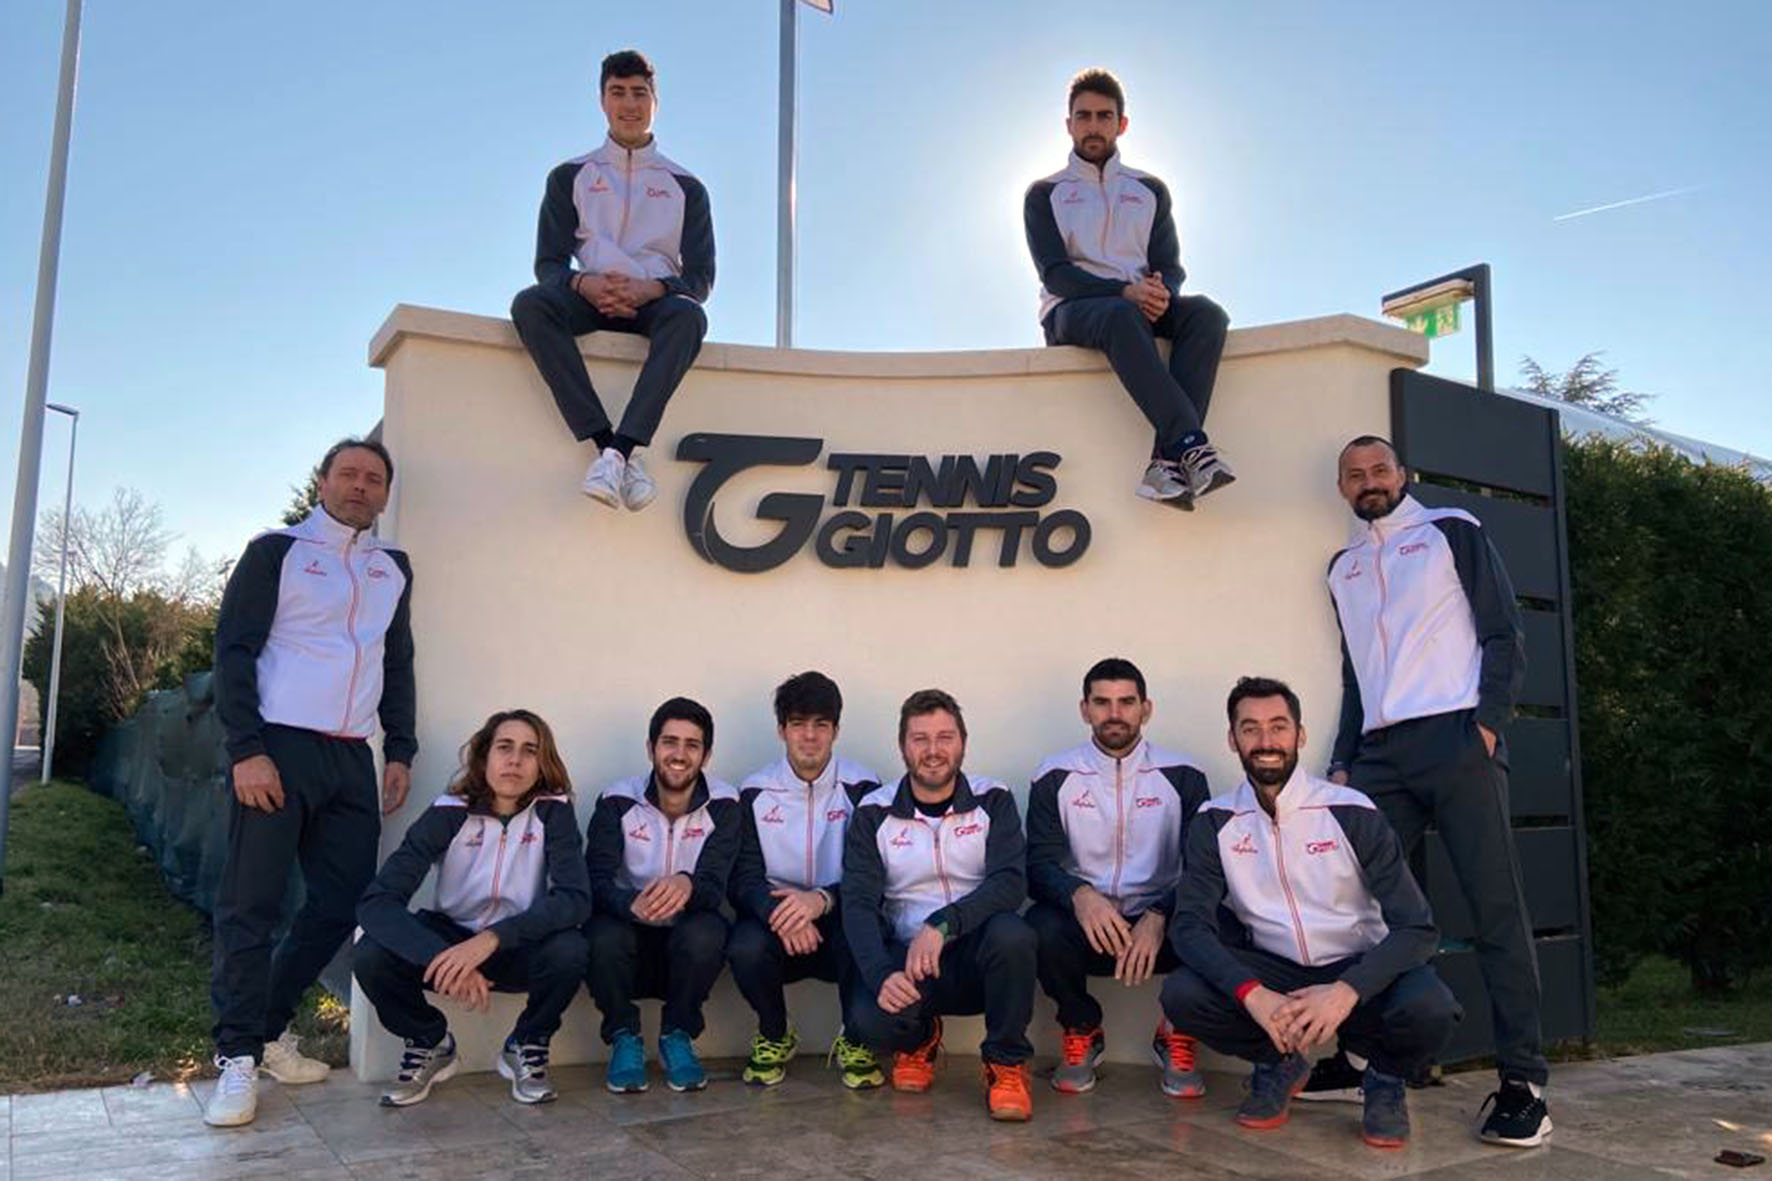 Il Tennis Giotto schiera sette squadre nei campionati senior